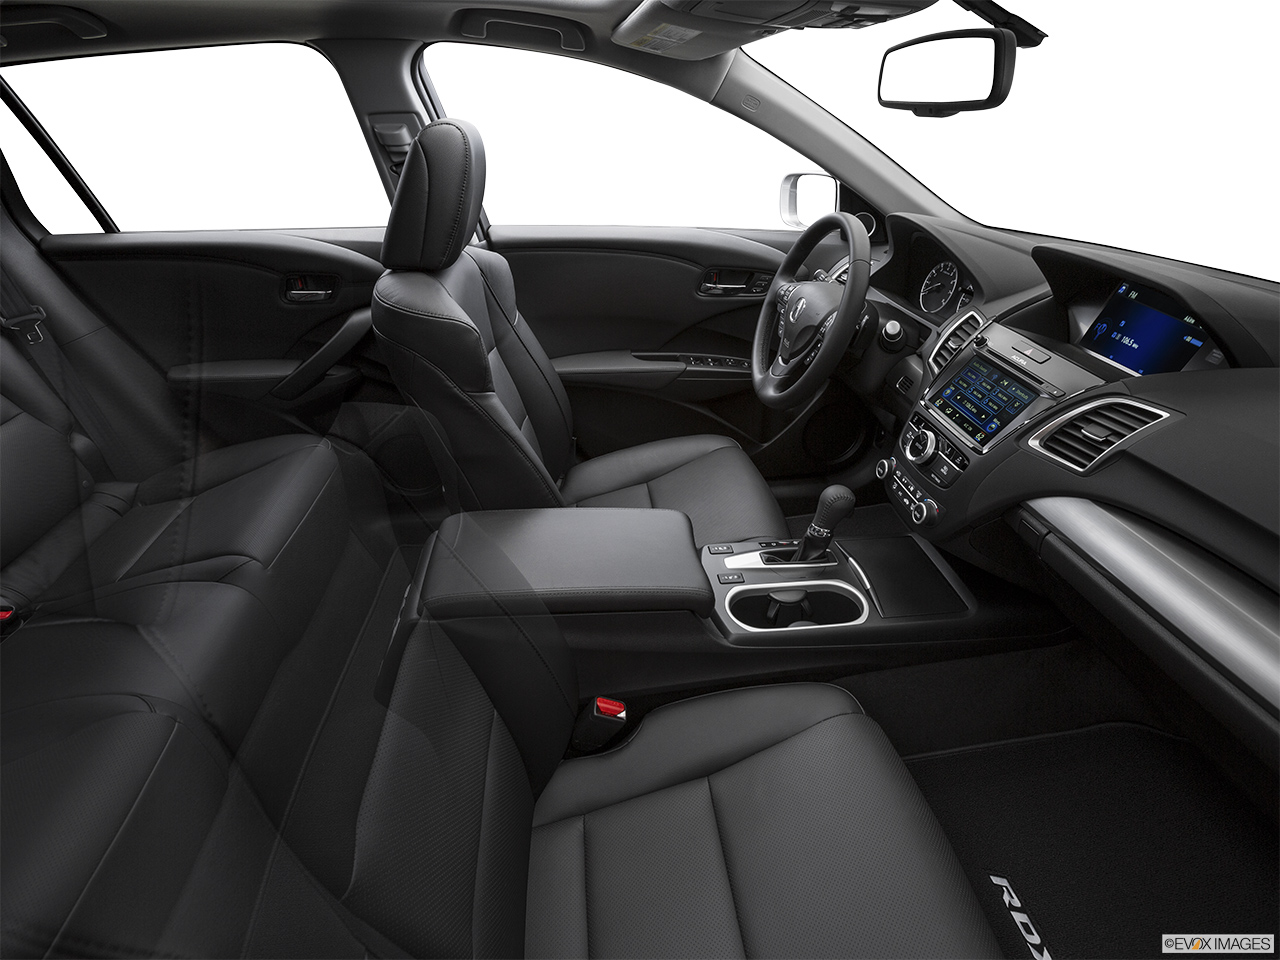 2017 Acura RDX AWD Fake Buck Shot - Interior from Passenger B pillar. 